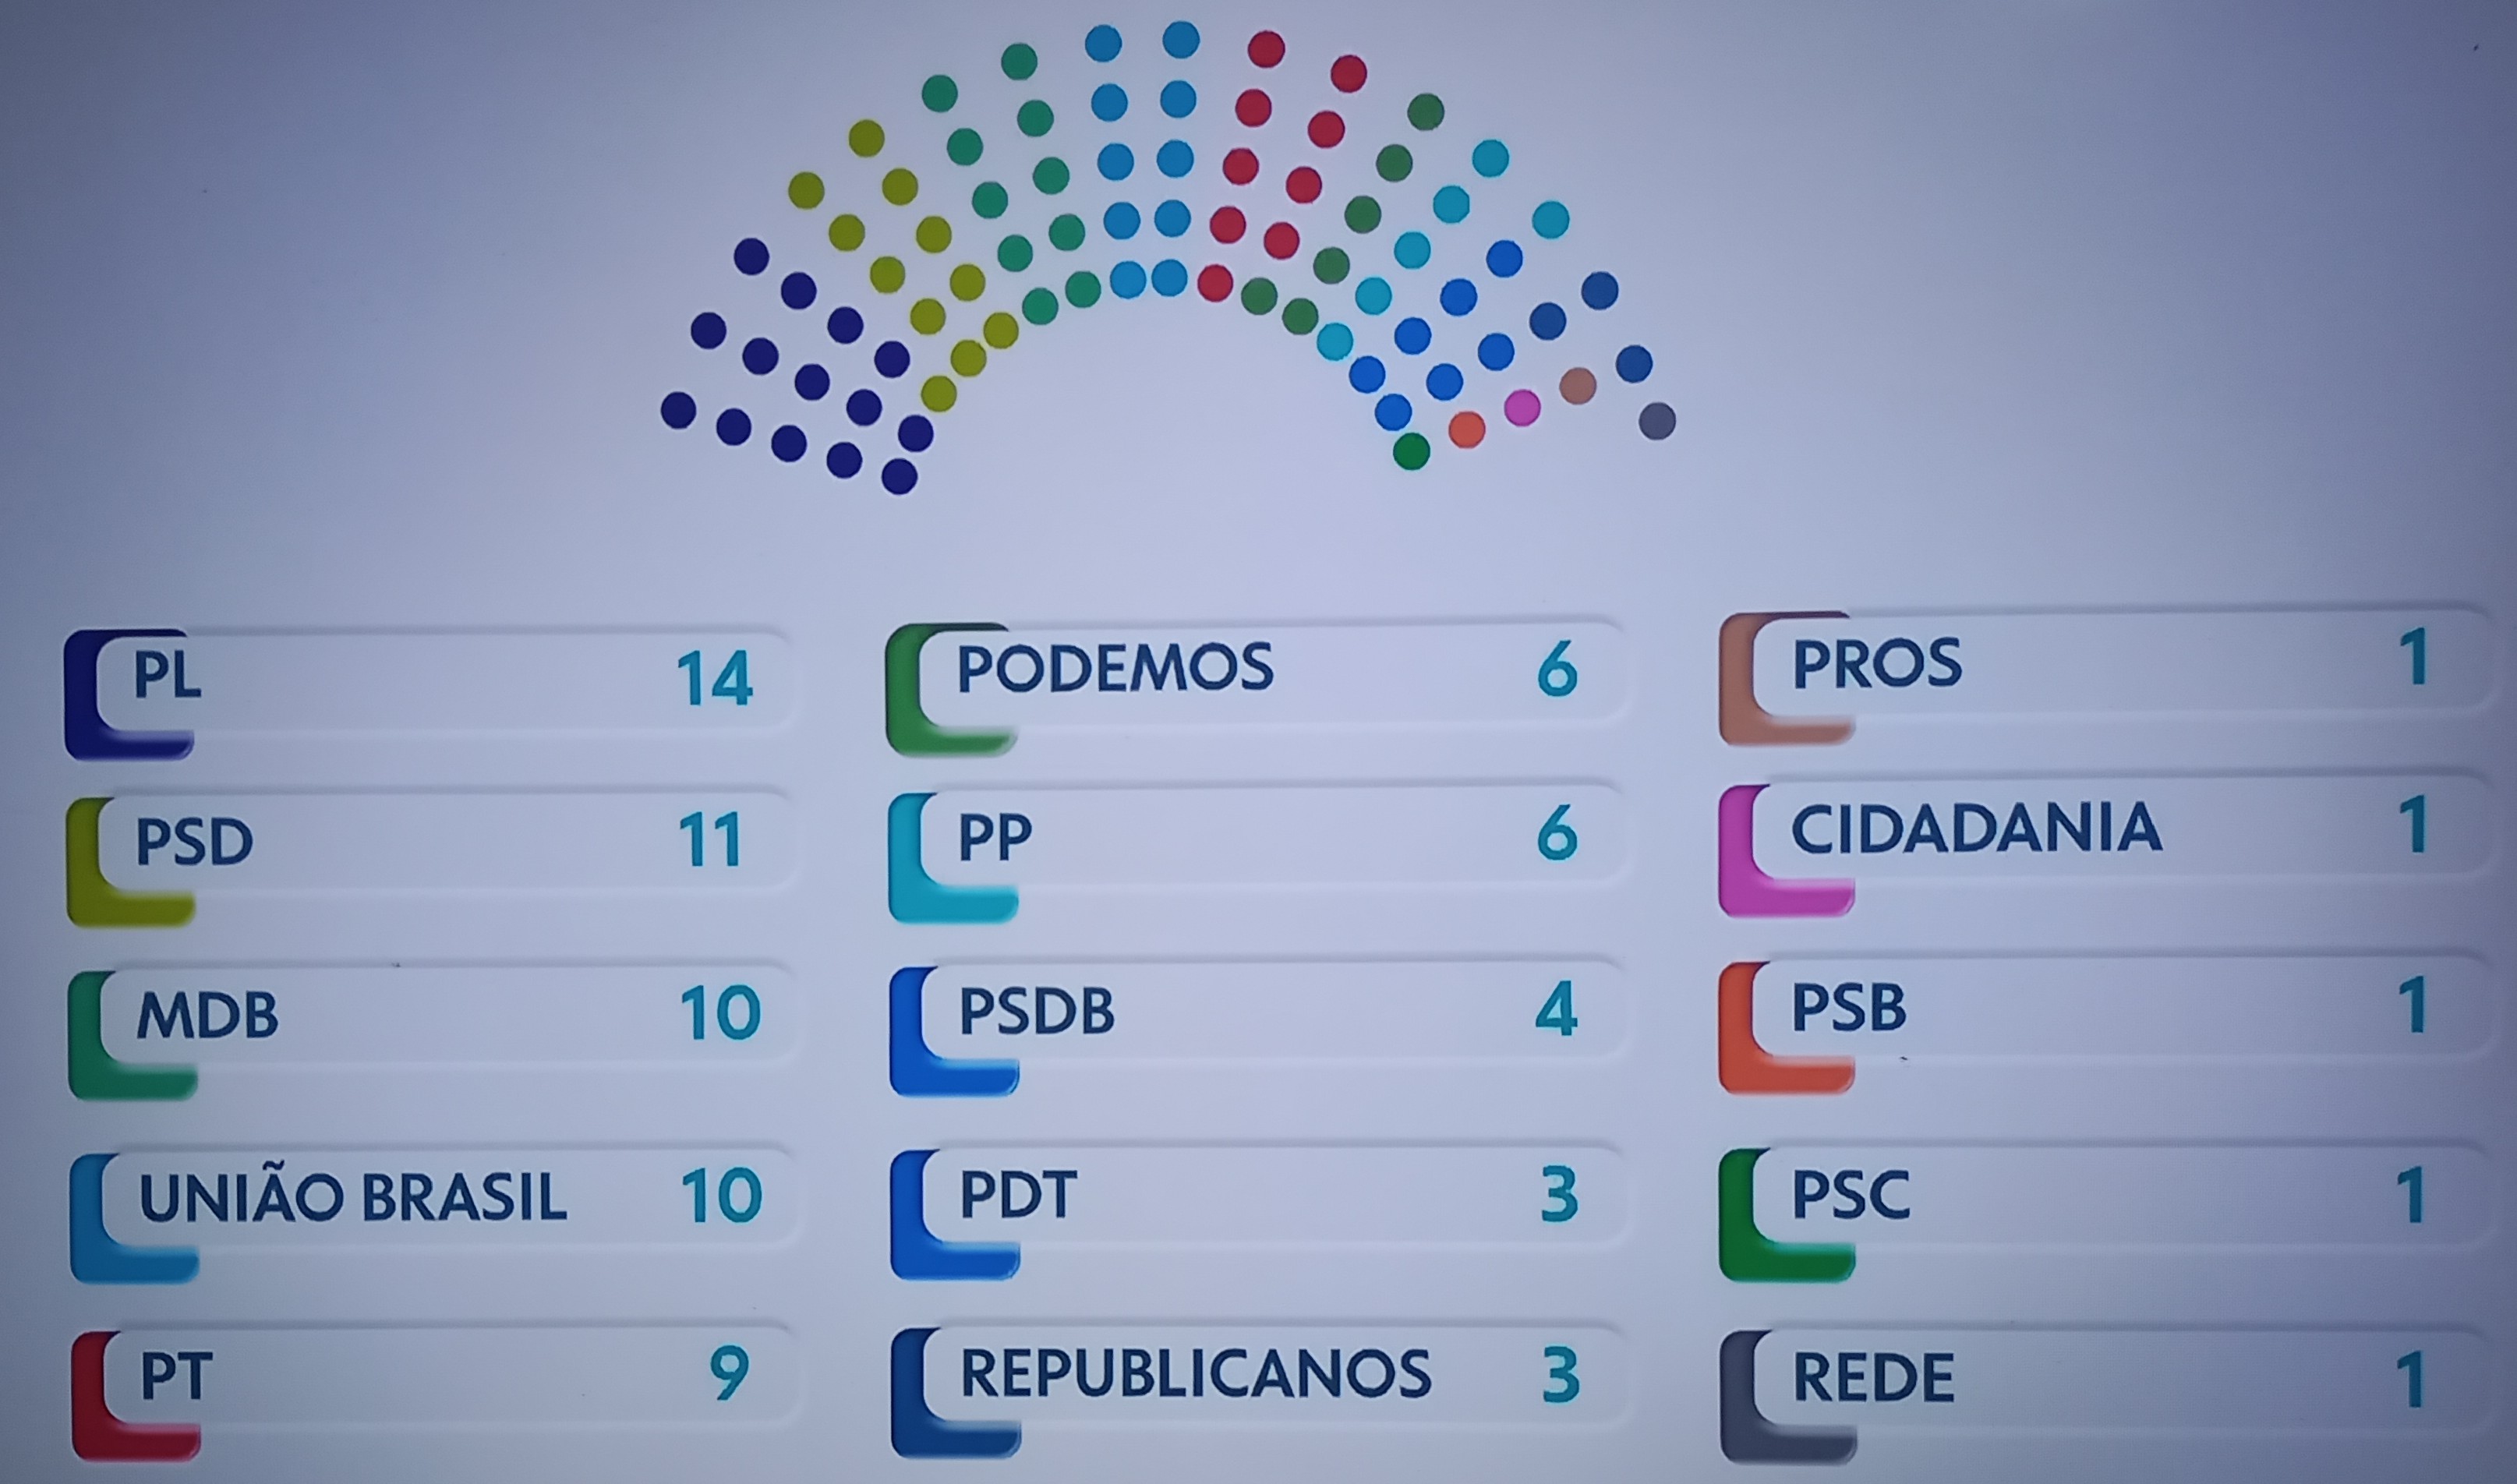 Partidos de direita são a maioria na composição do Senado